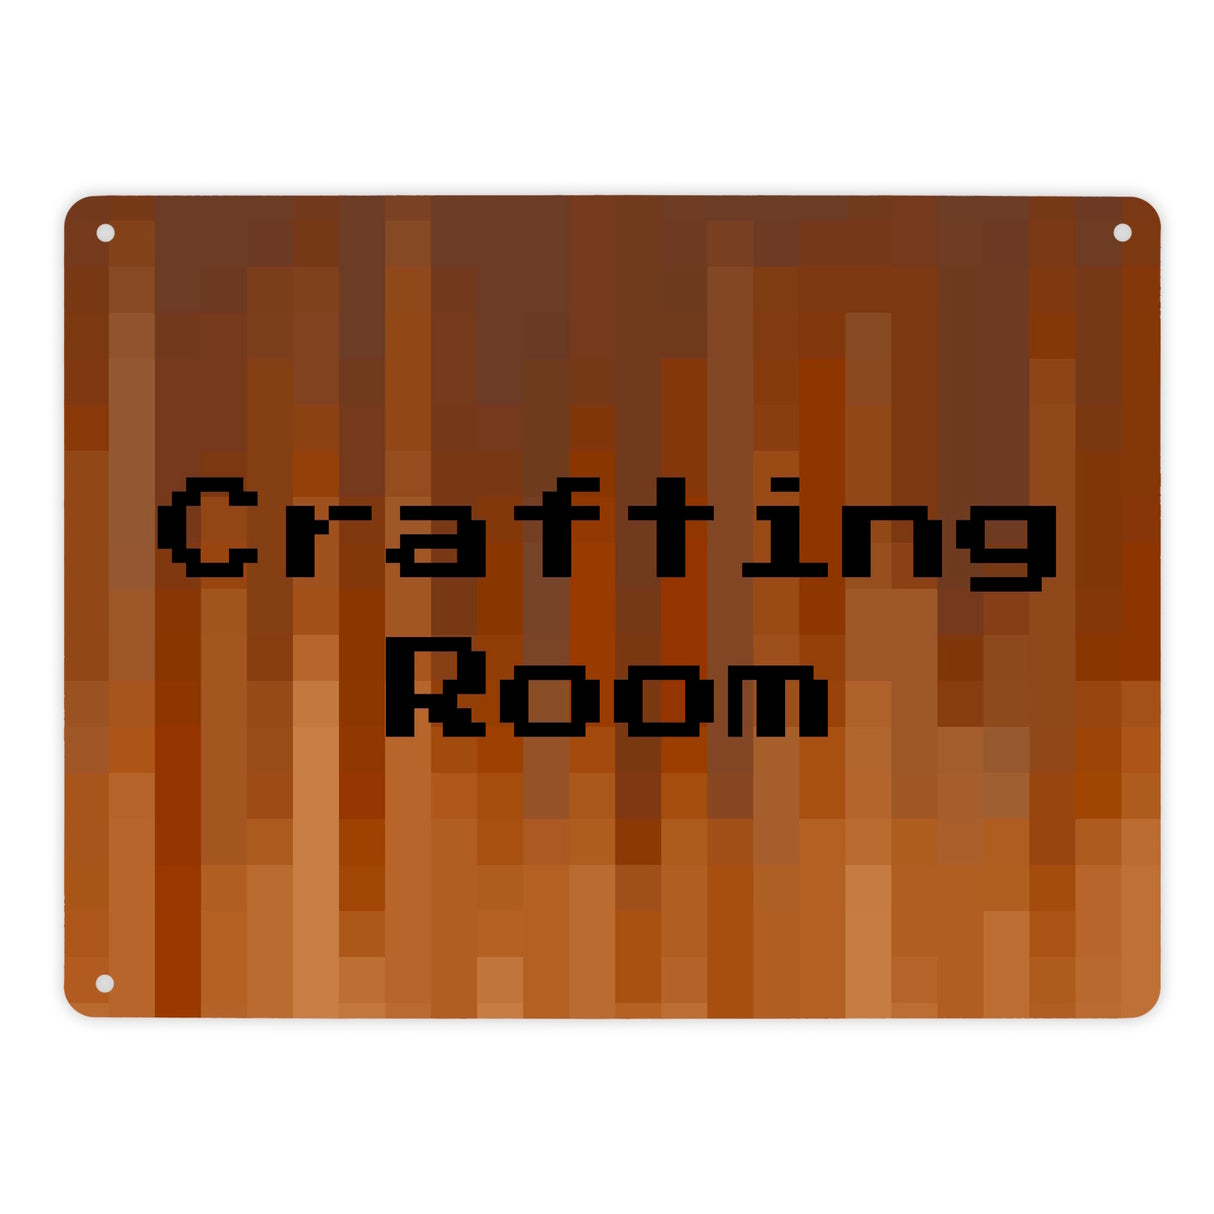 Metallschild in 15x20 cm Pixelmotiv und Spruch: Crafting Room Pixel Art Zockerzimmer